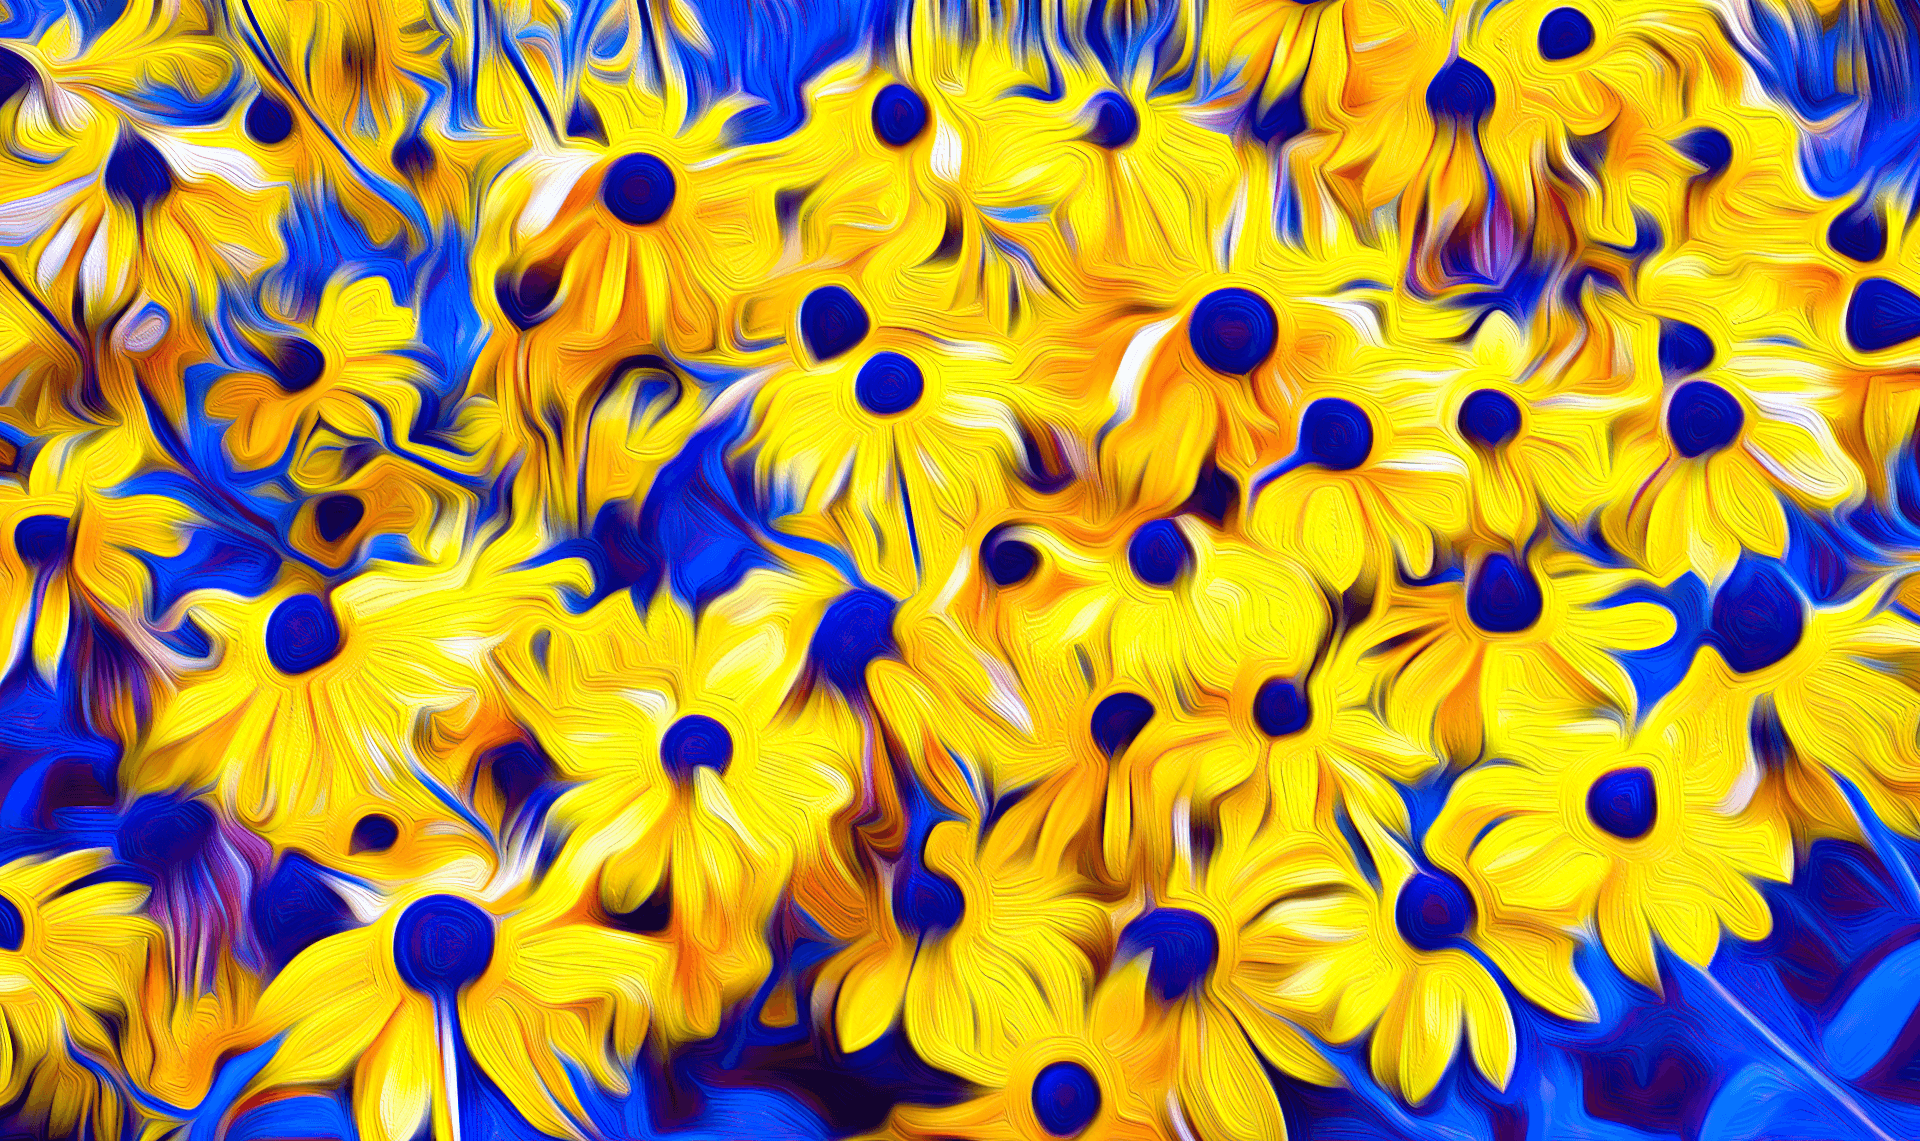 Flower Digital Art by Glen Woodfin